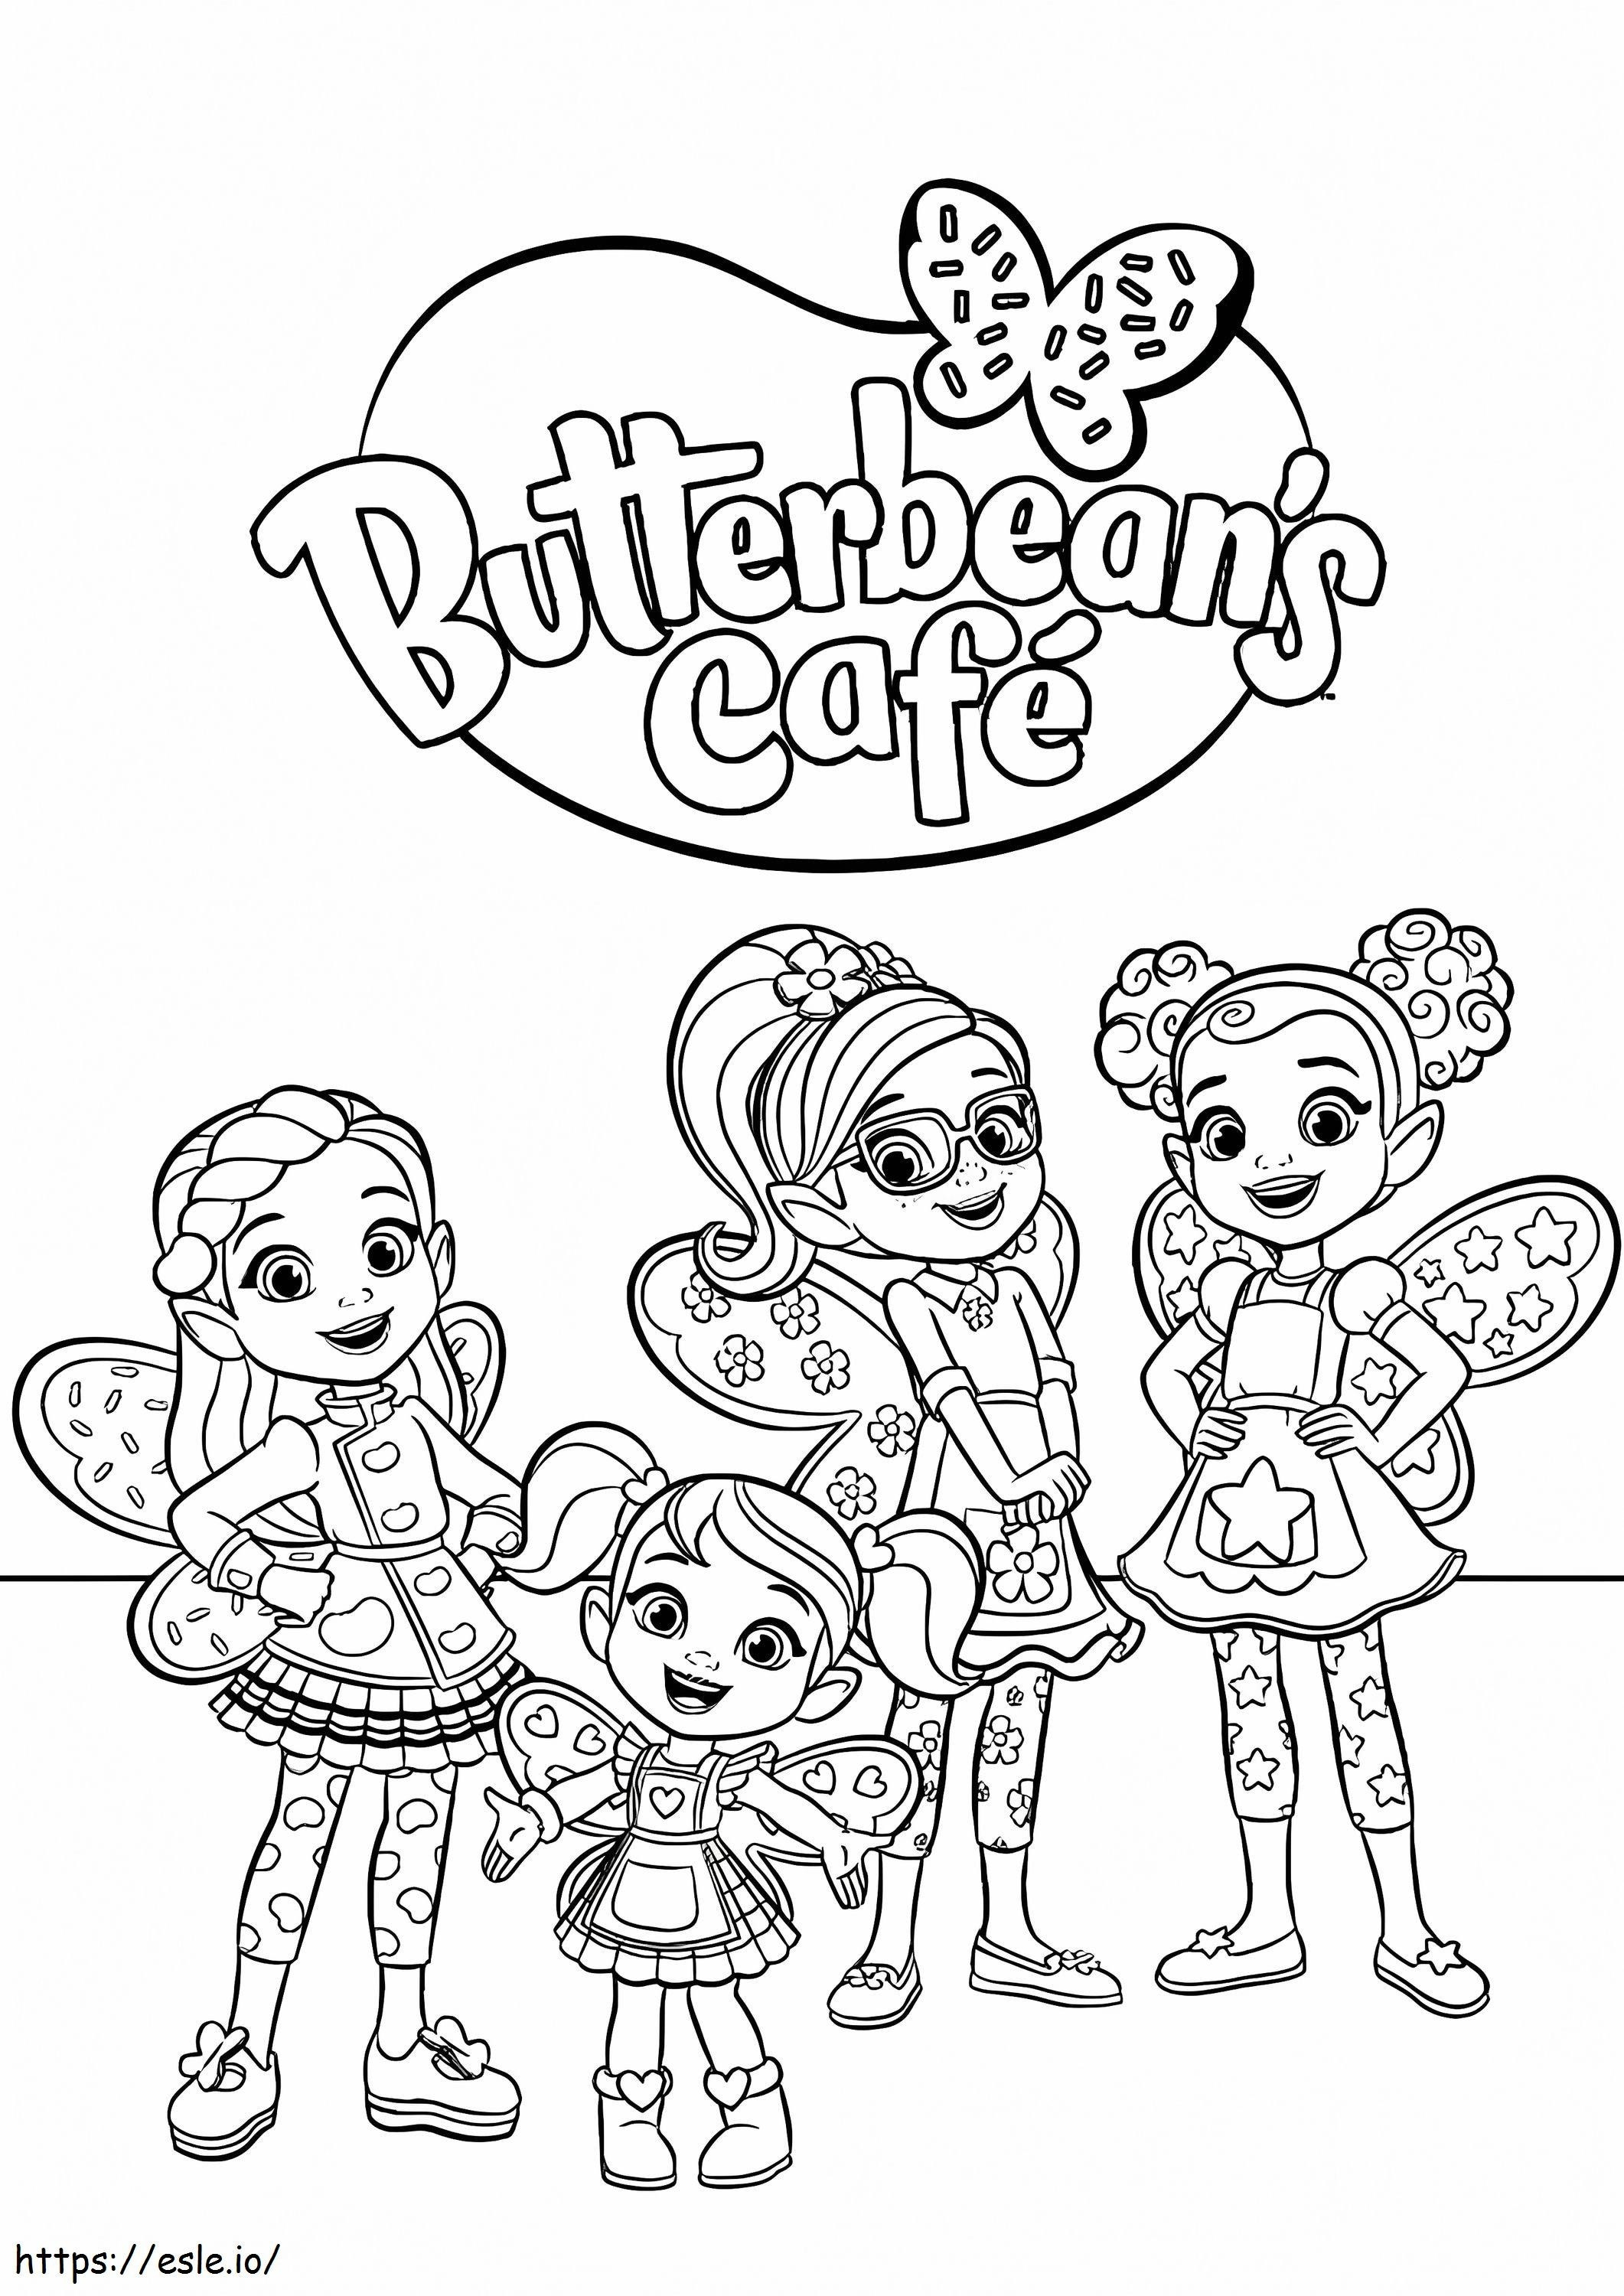 Personaje de la Butterbeans Cafe de colorat